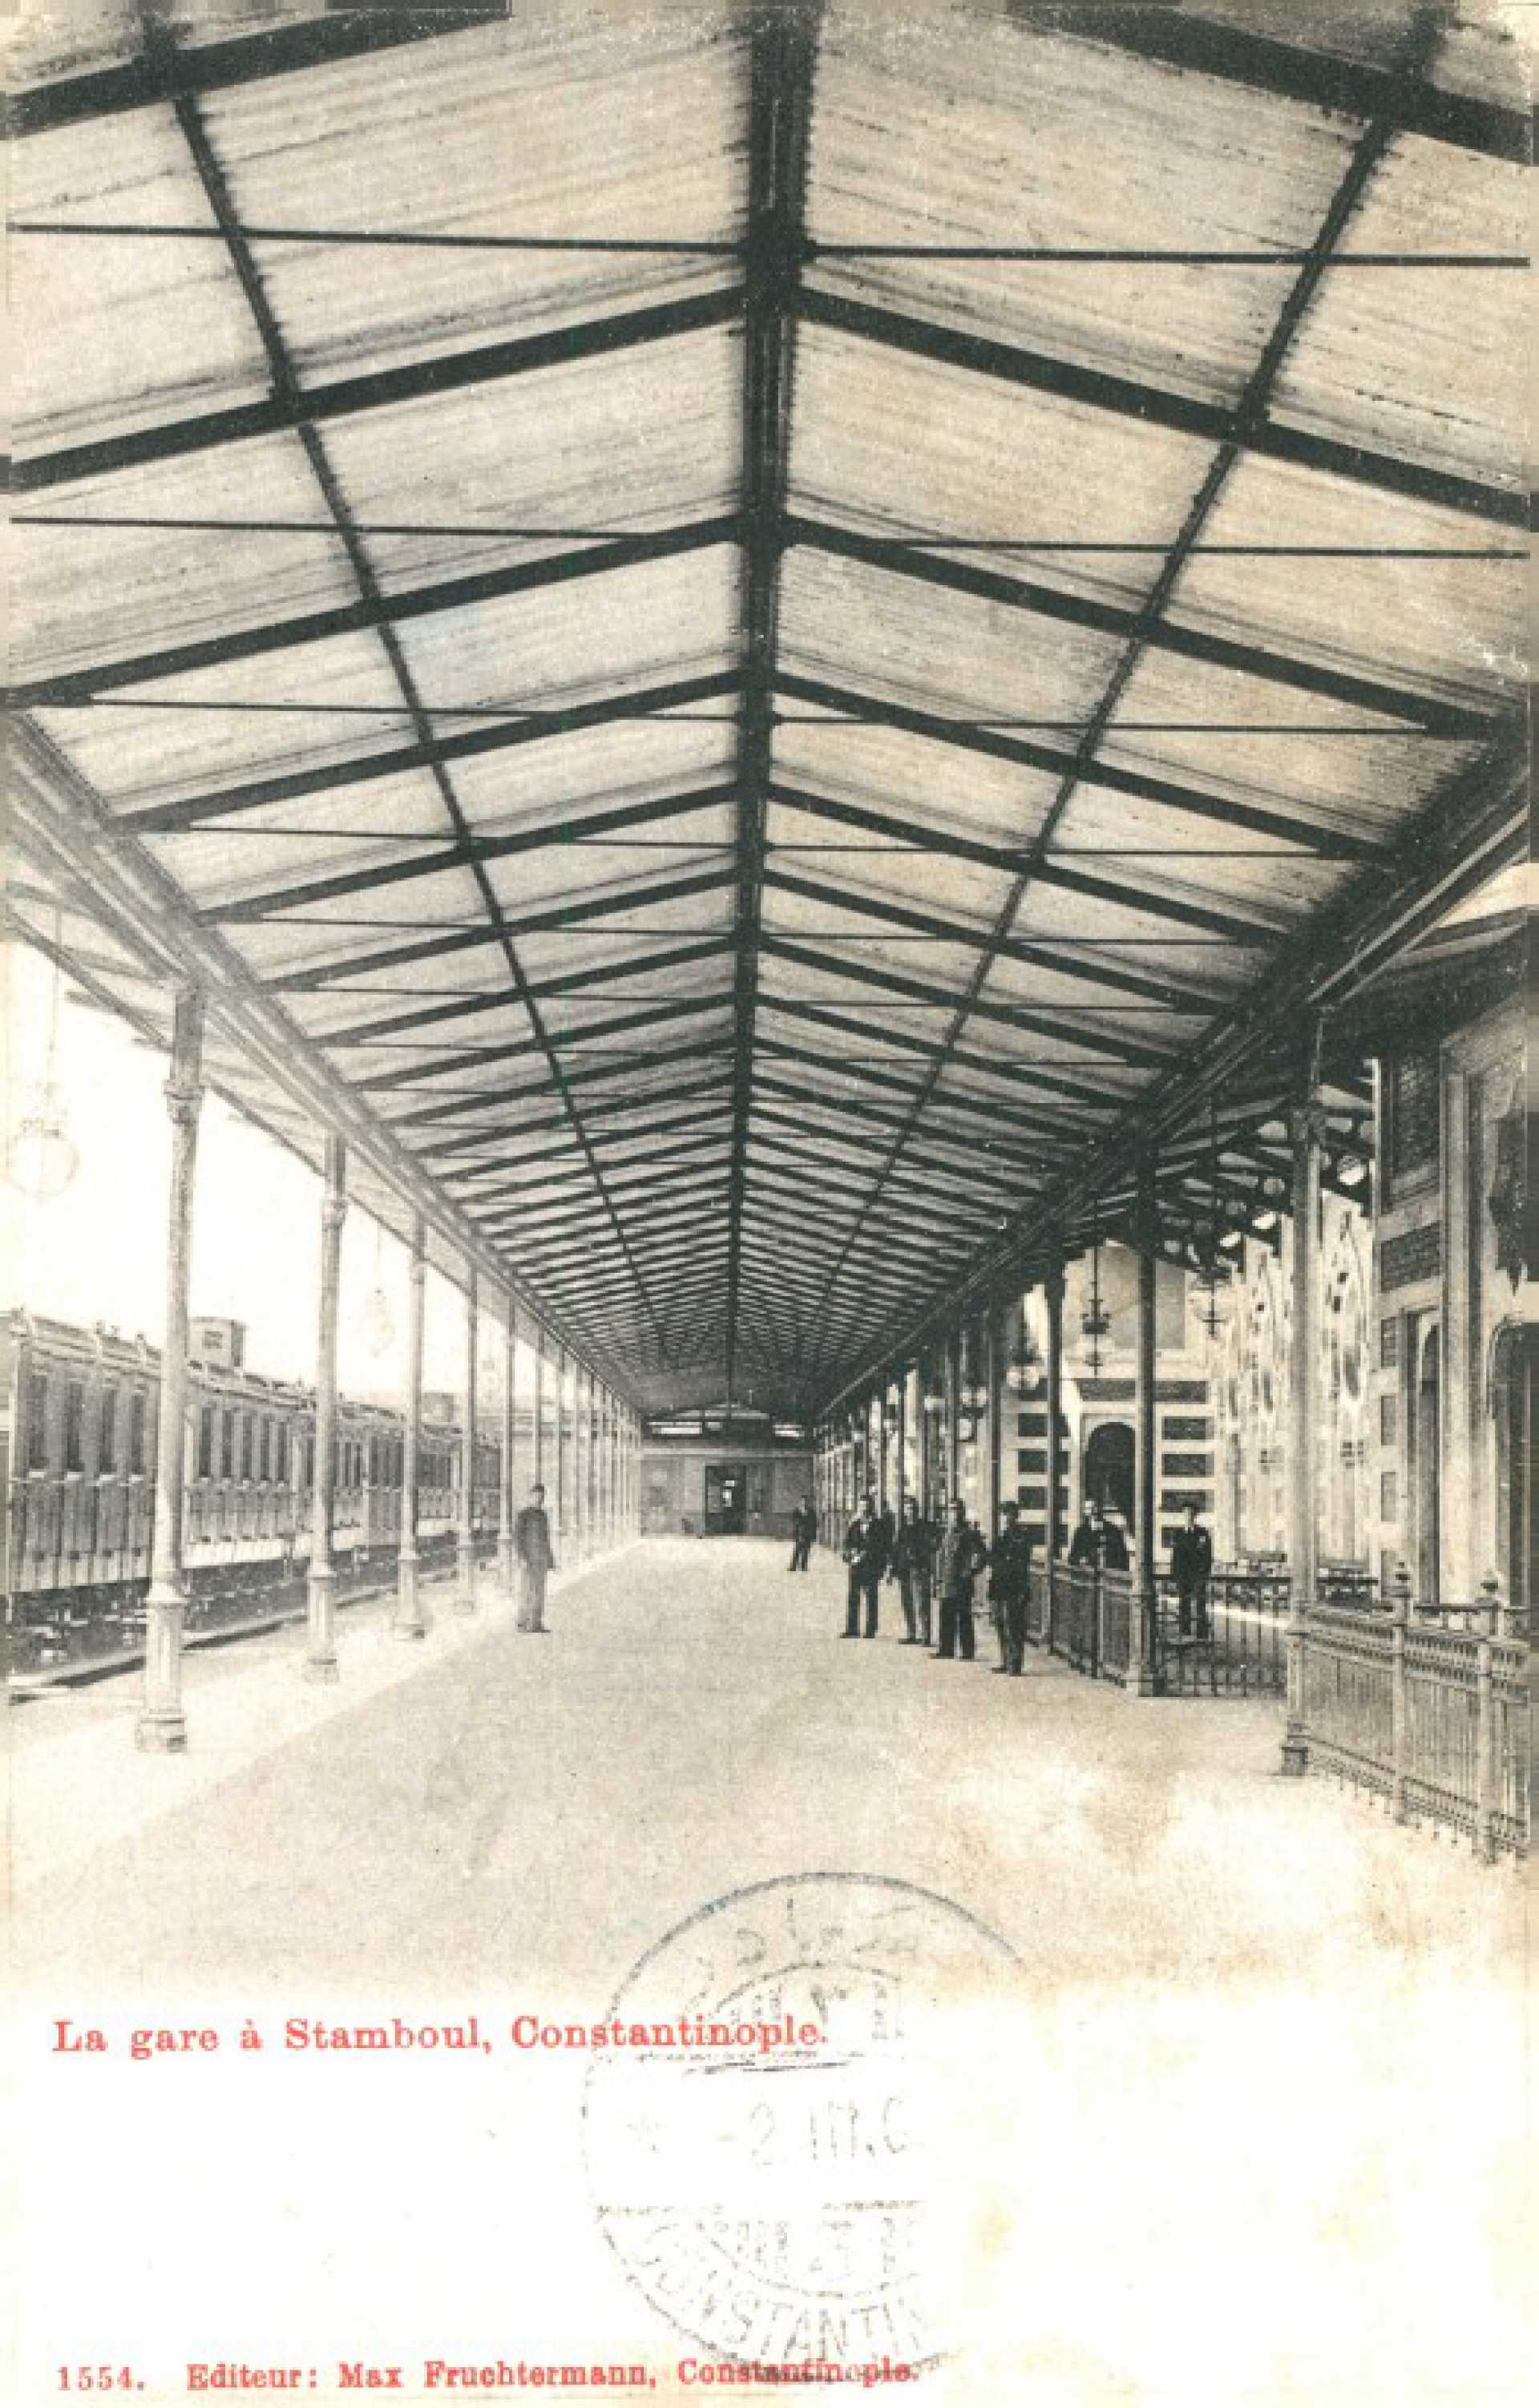 La gare a Stamboul